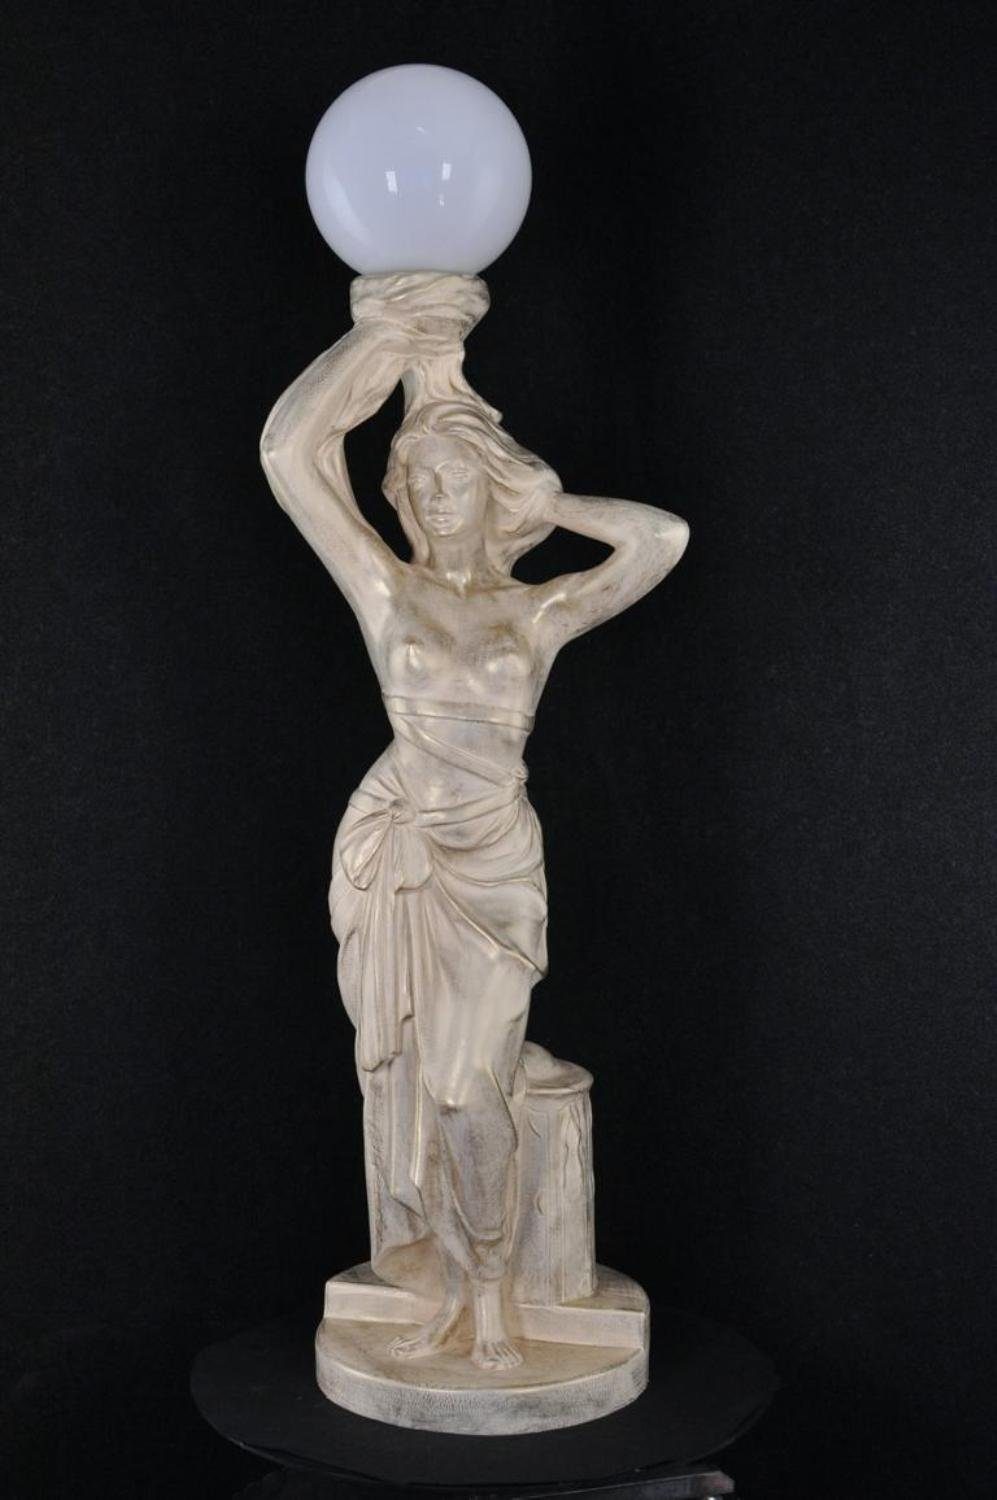 JVmoebel Skulptur Antik Stil Stehleuchte Standleuchte Leuchte Lampe Figur Skulptur